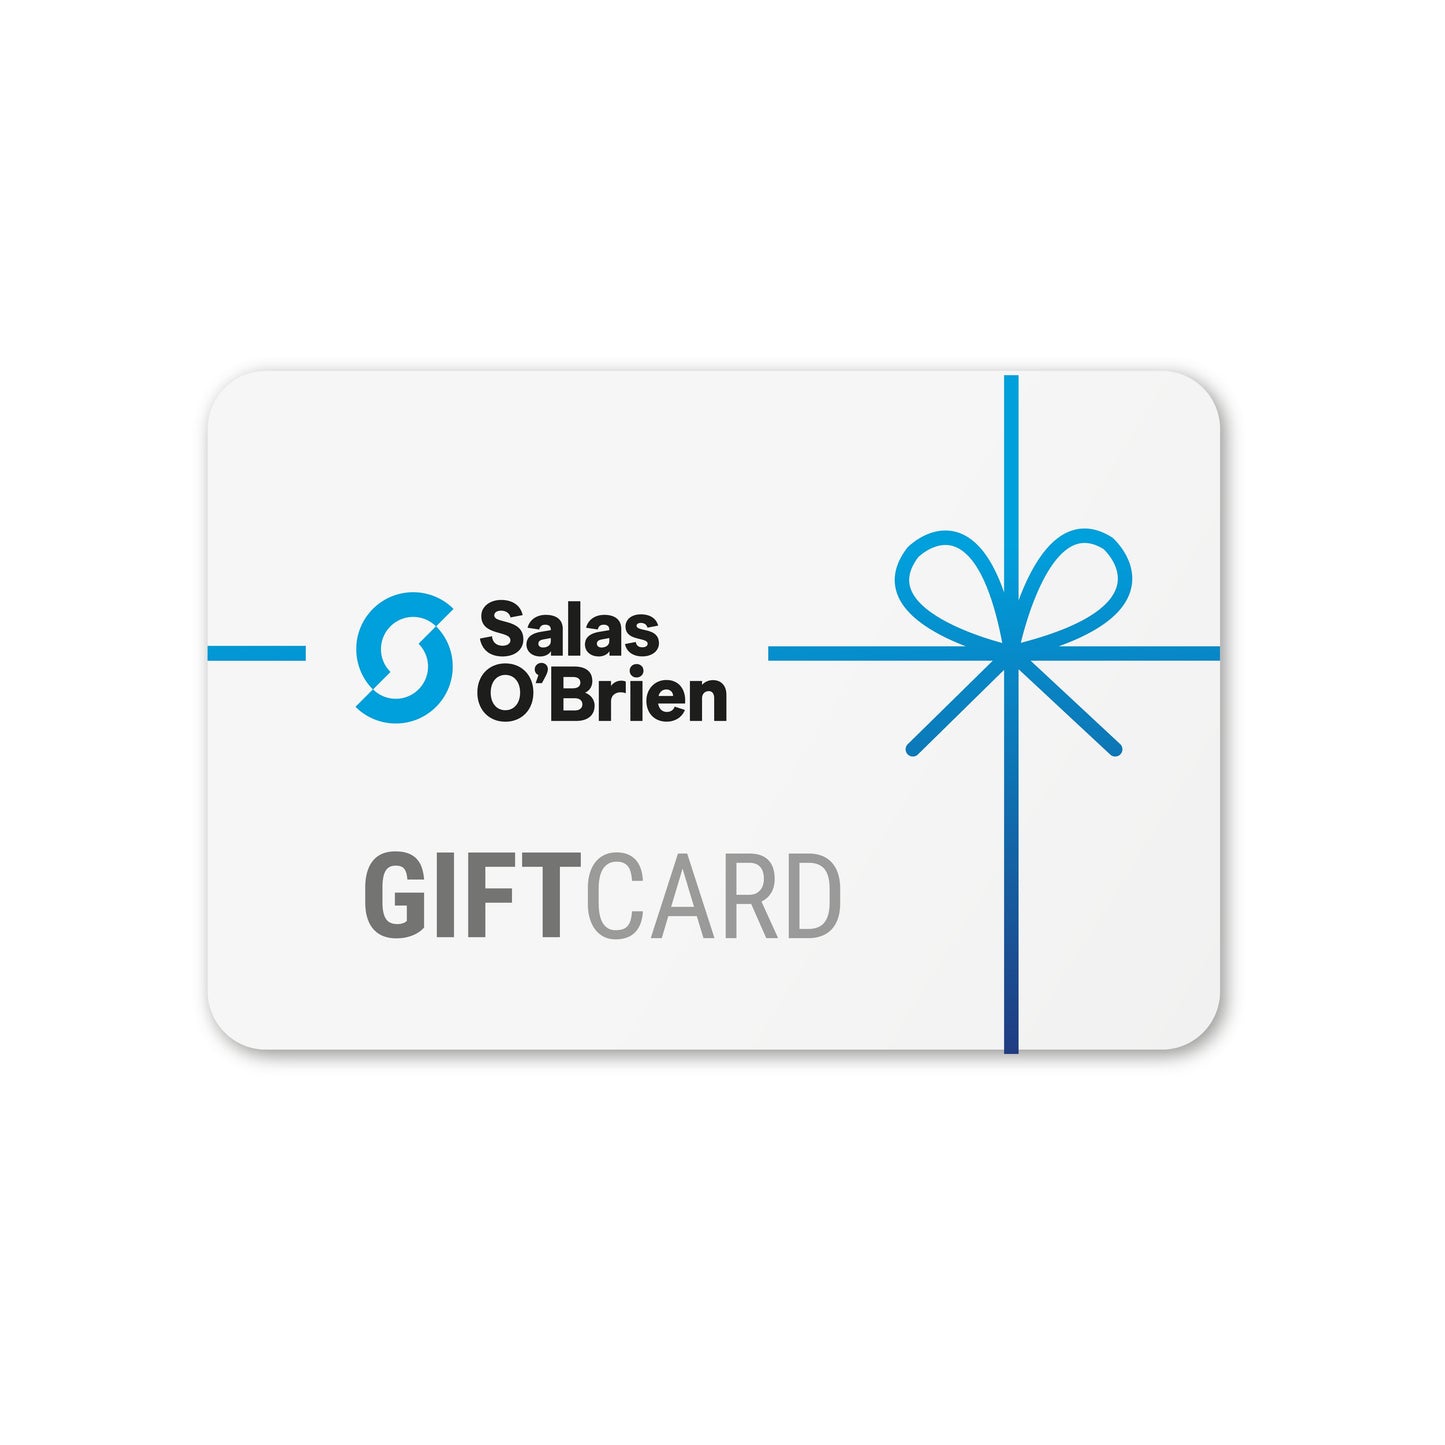 Salas O'Brien Gift Card